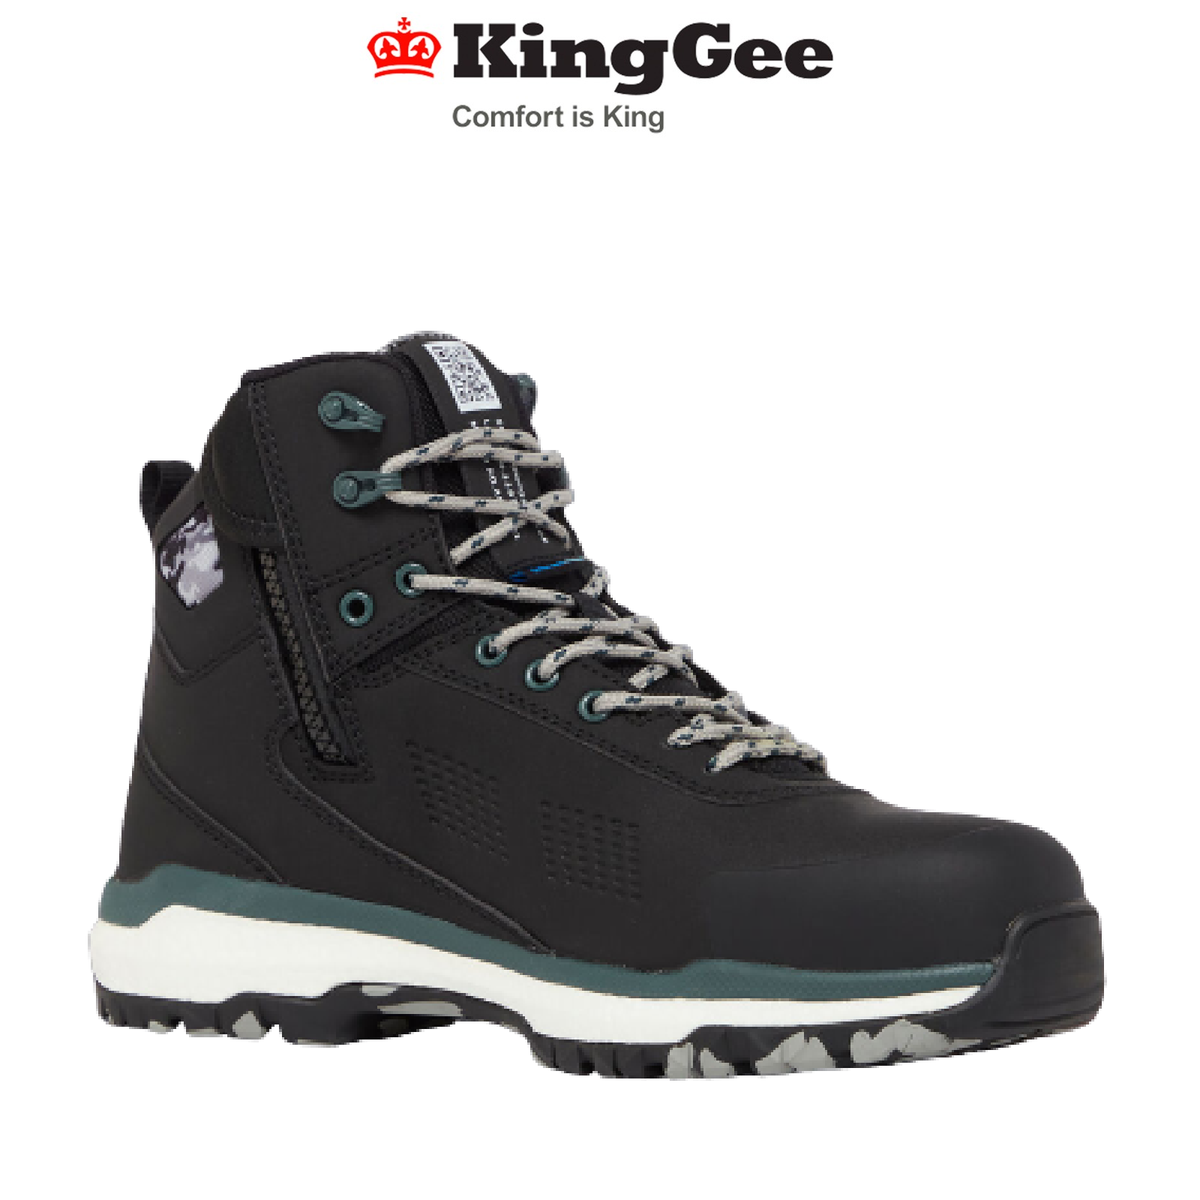 KingGee Mens Terra Firma Hybrid Safety Microfiber Work Boots Light Weight K27952